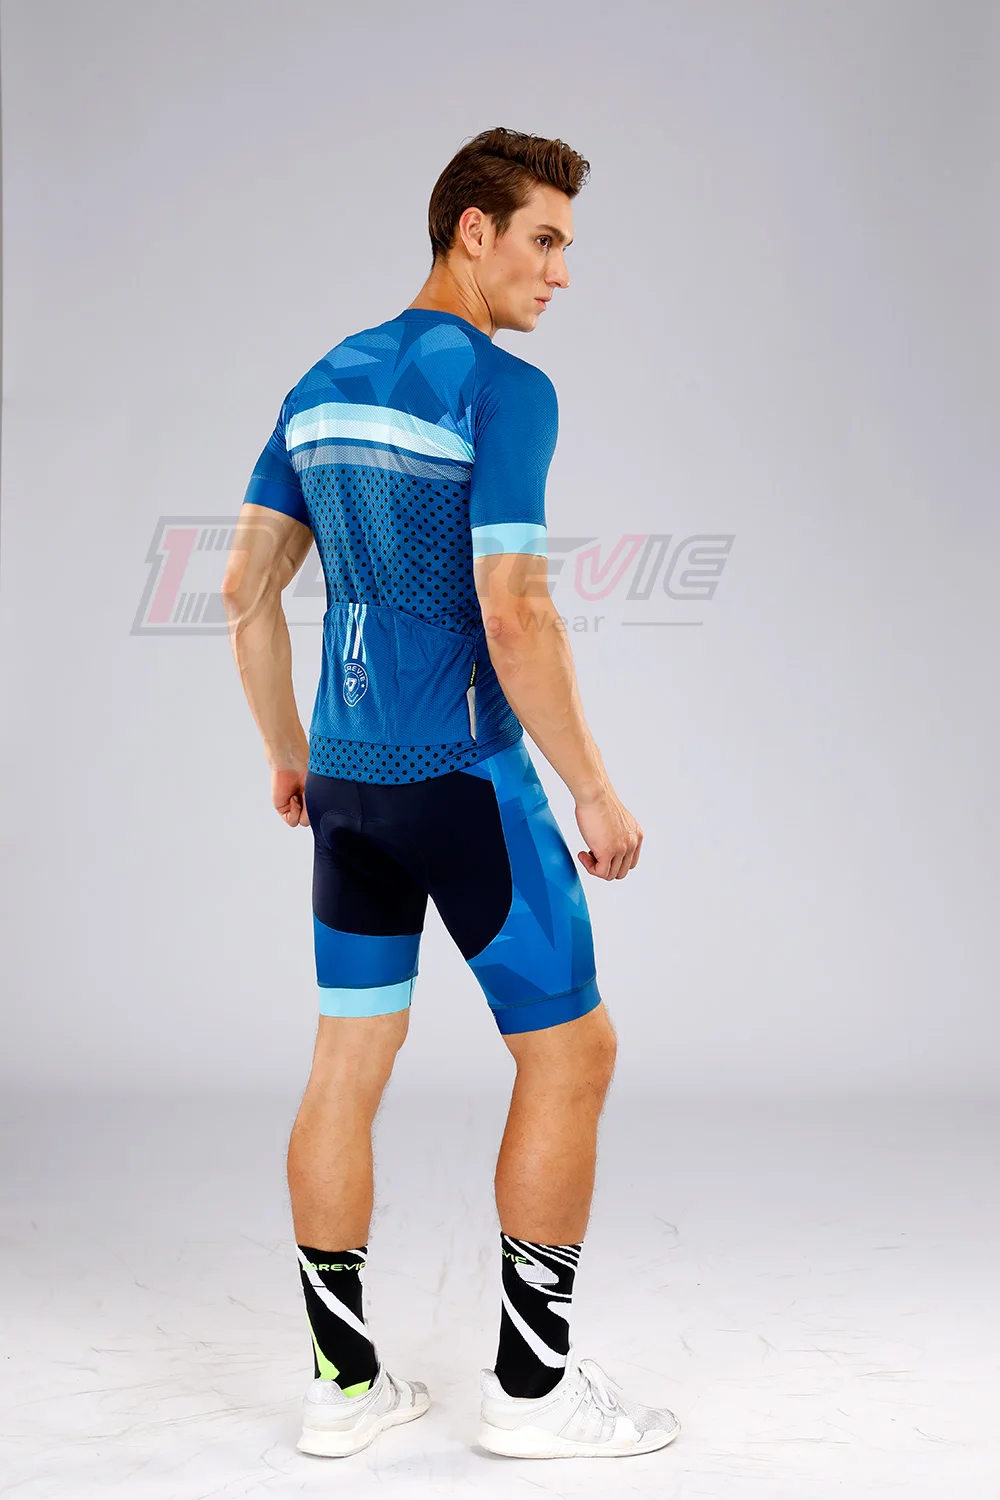 Darevie синий комплект для велоспорта, велосипедная Джерси-накладка, противоударные велосипедные шорты, дышащие комплекты одежды для велоспорта, командная форма для велоспорта